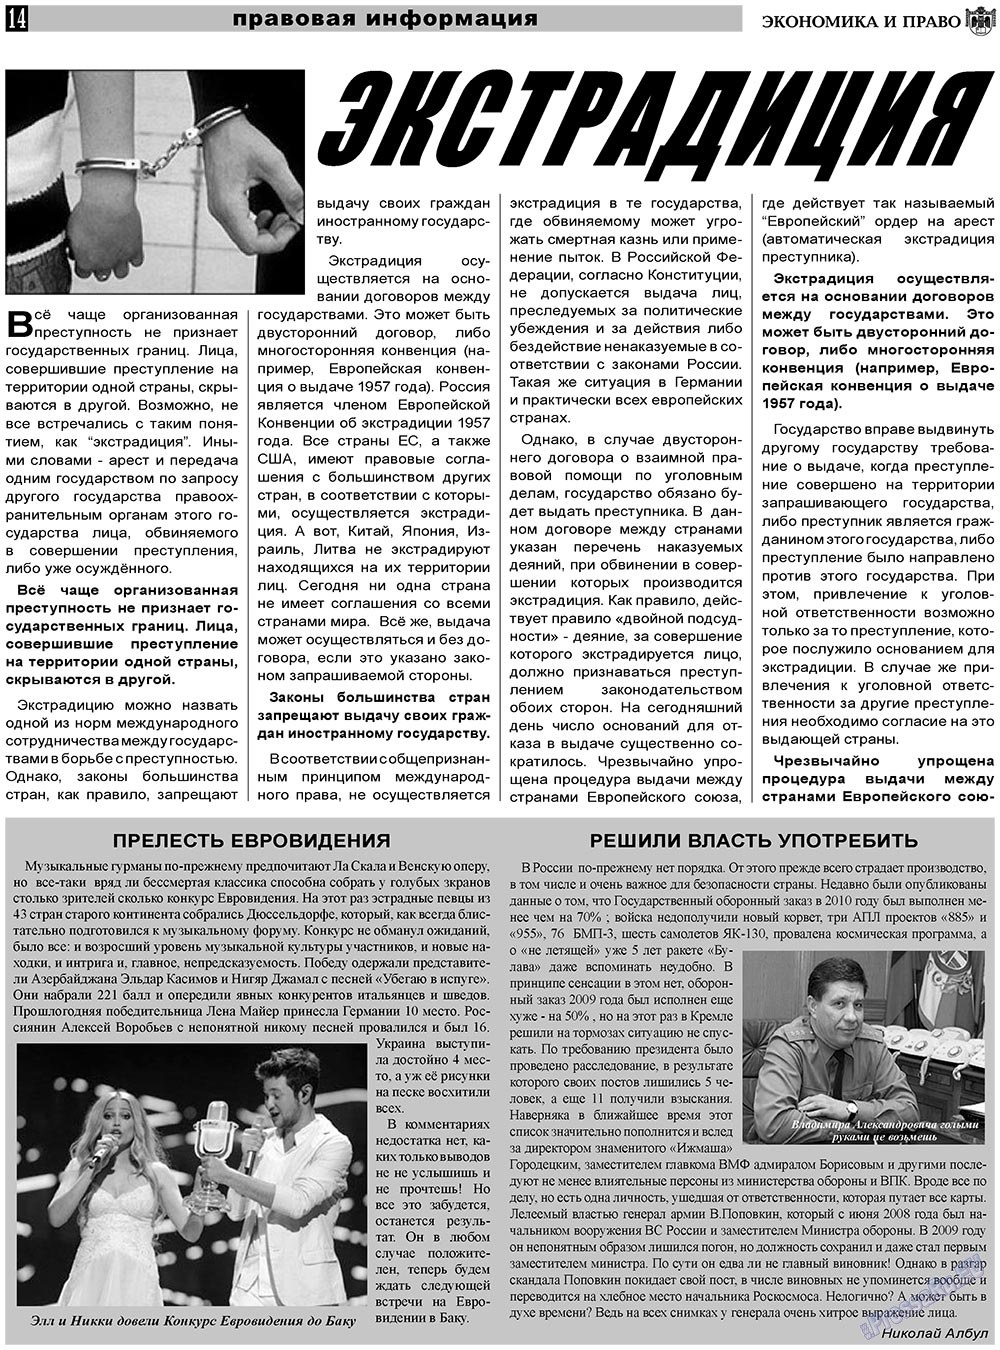 Экономика и право, газета. 2011 №6 стр.14